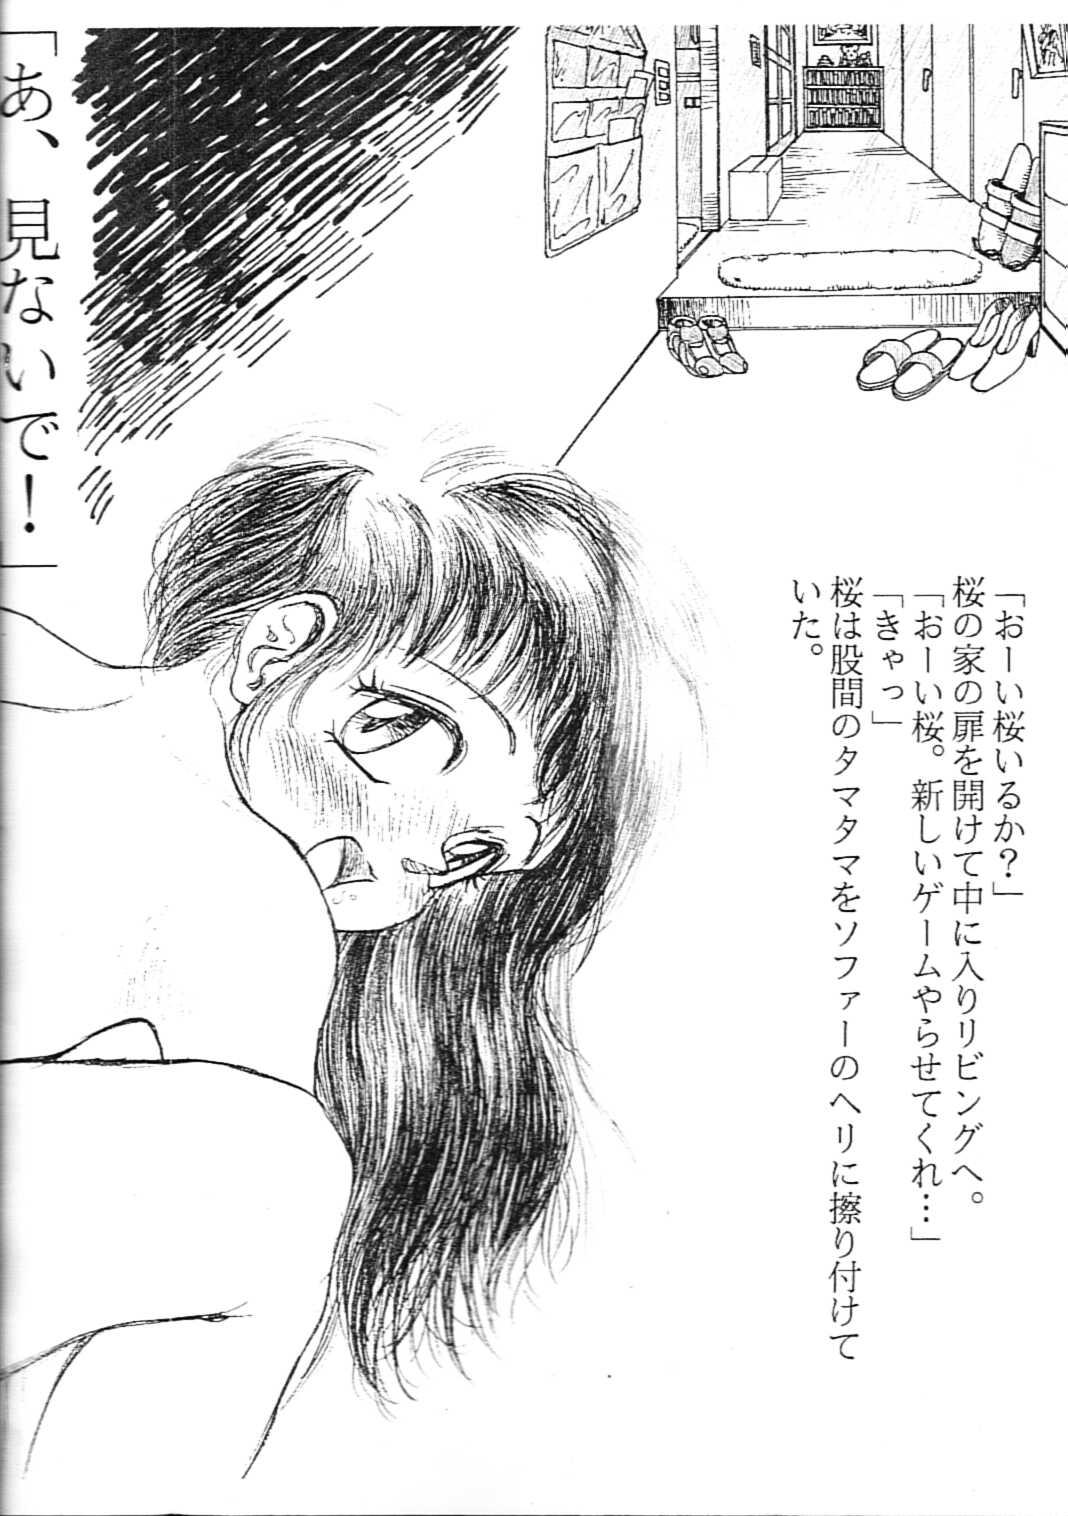 Hot Girl Fuck Sakuragai Ehonban - Barcode fighter Old Man - Page 2